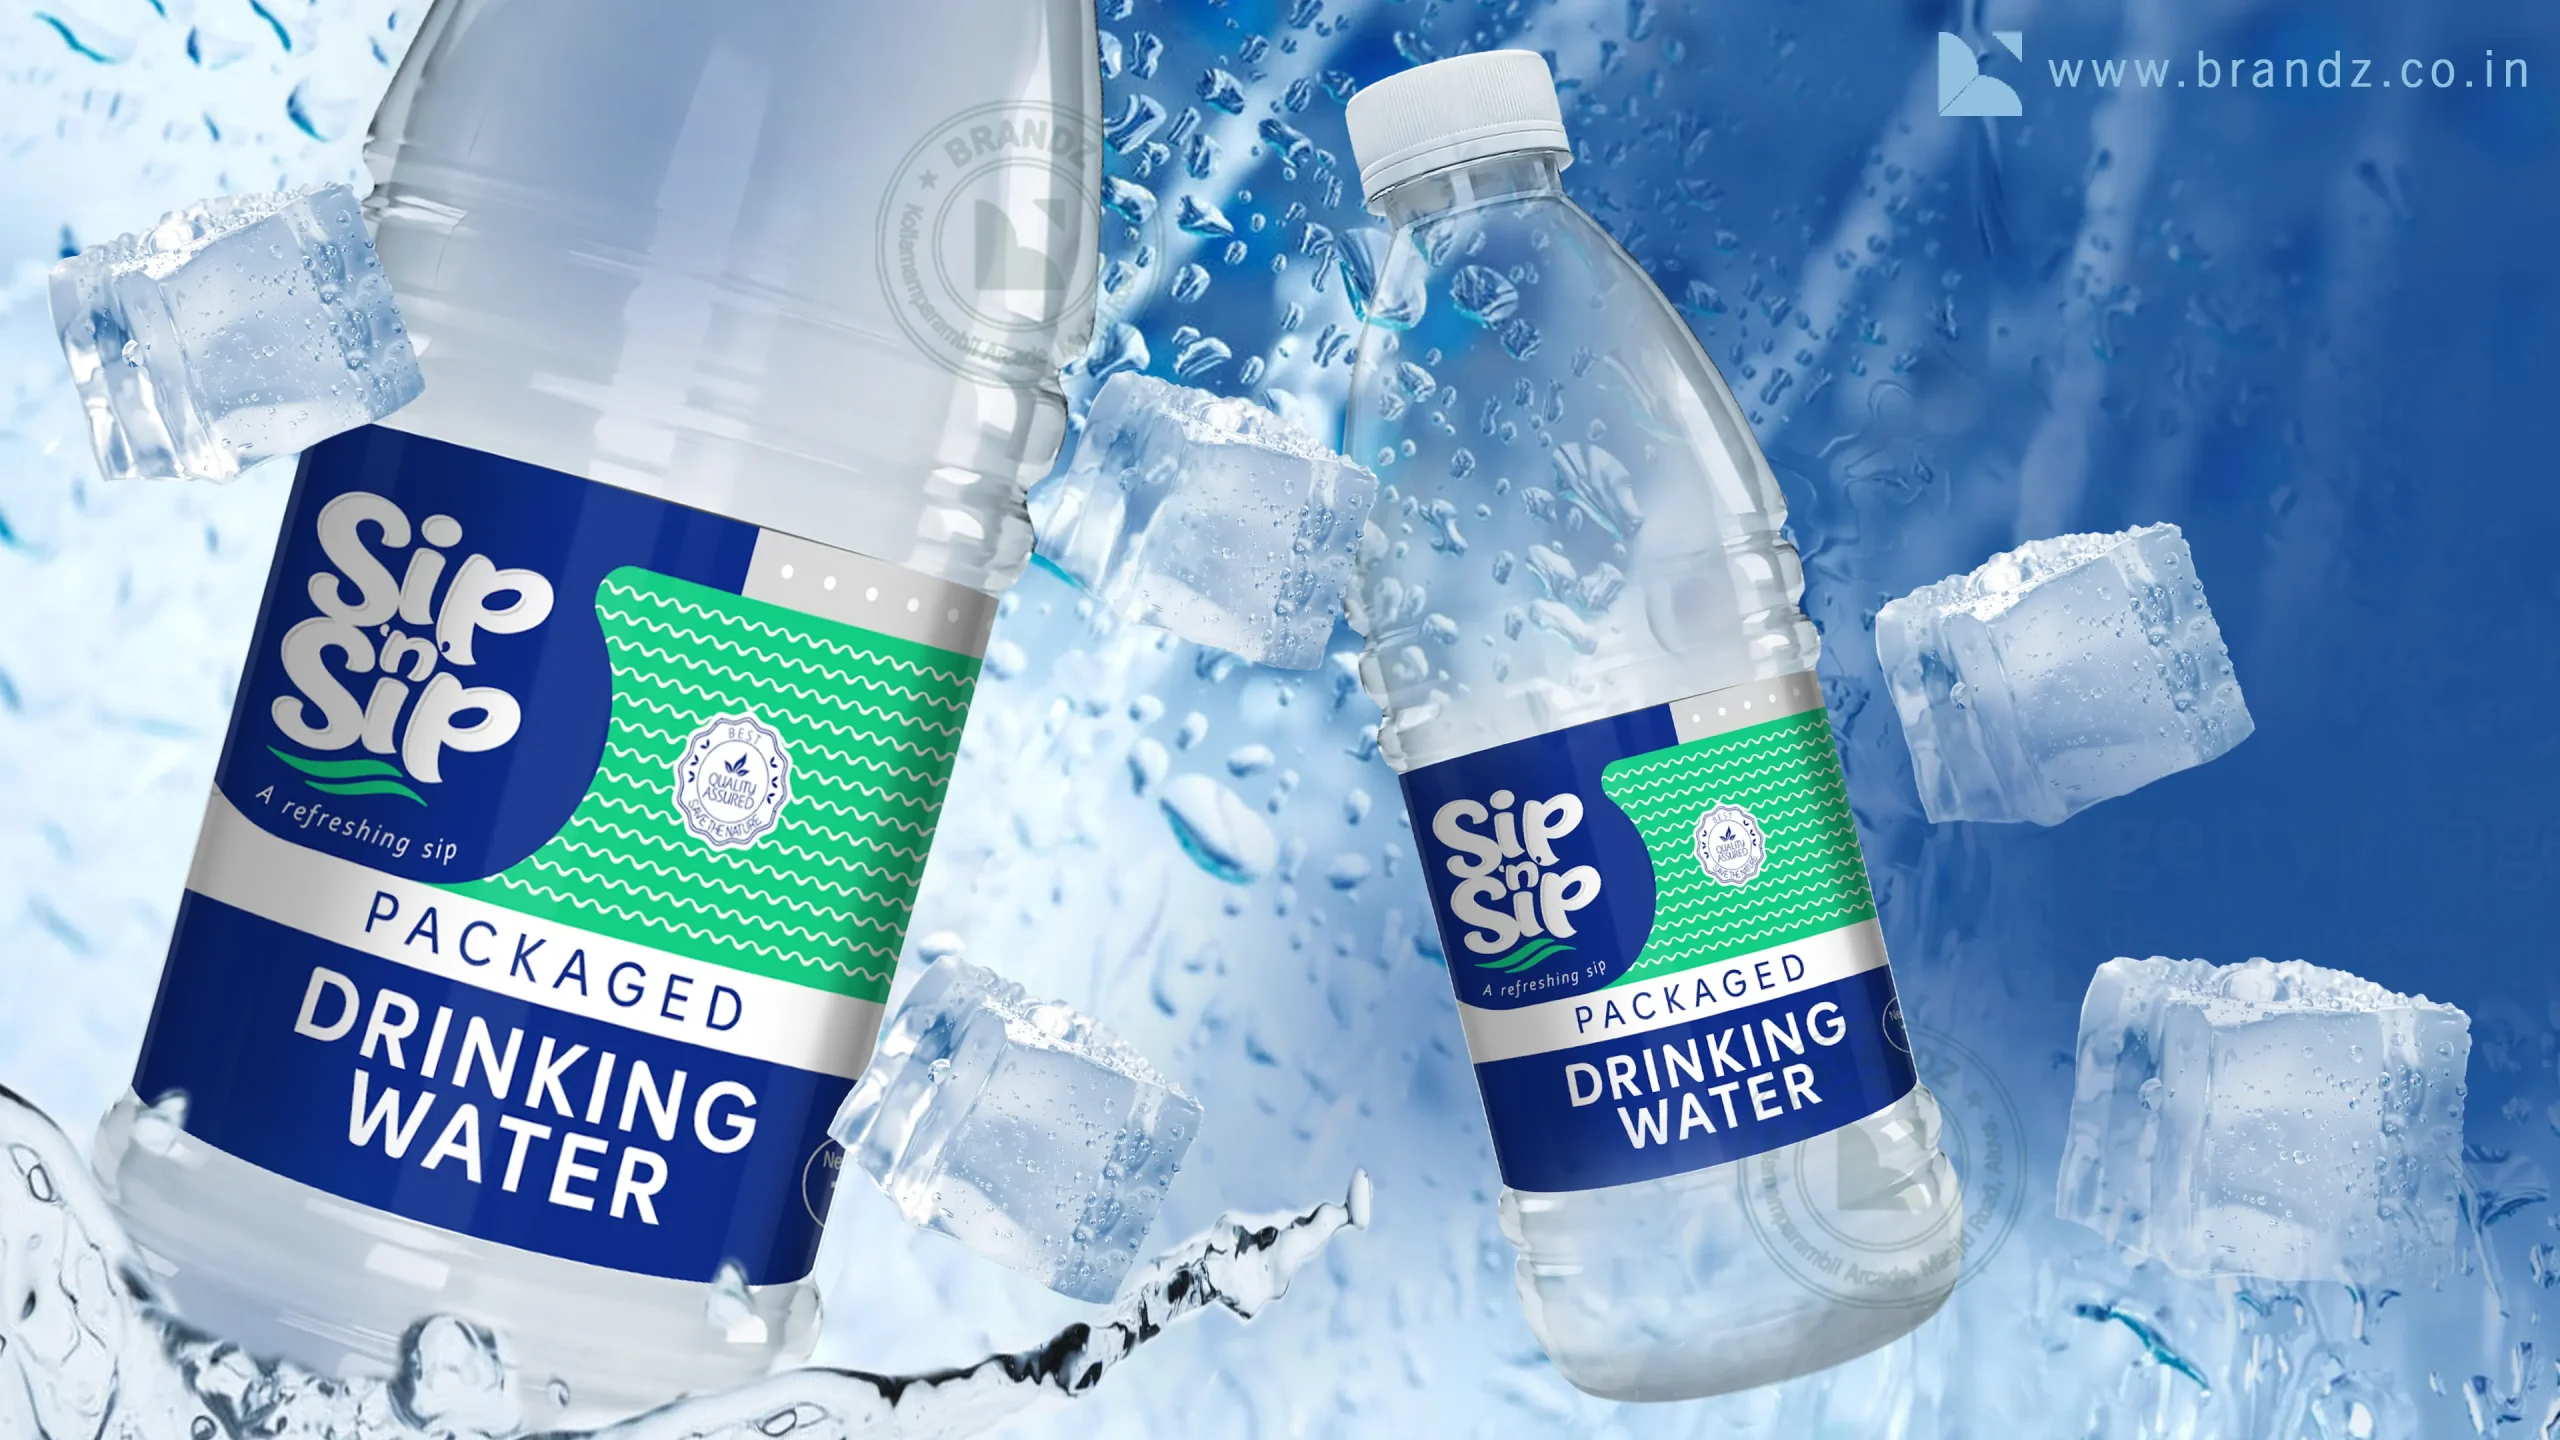 Sip N Sip Drinking Water Label